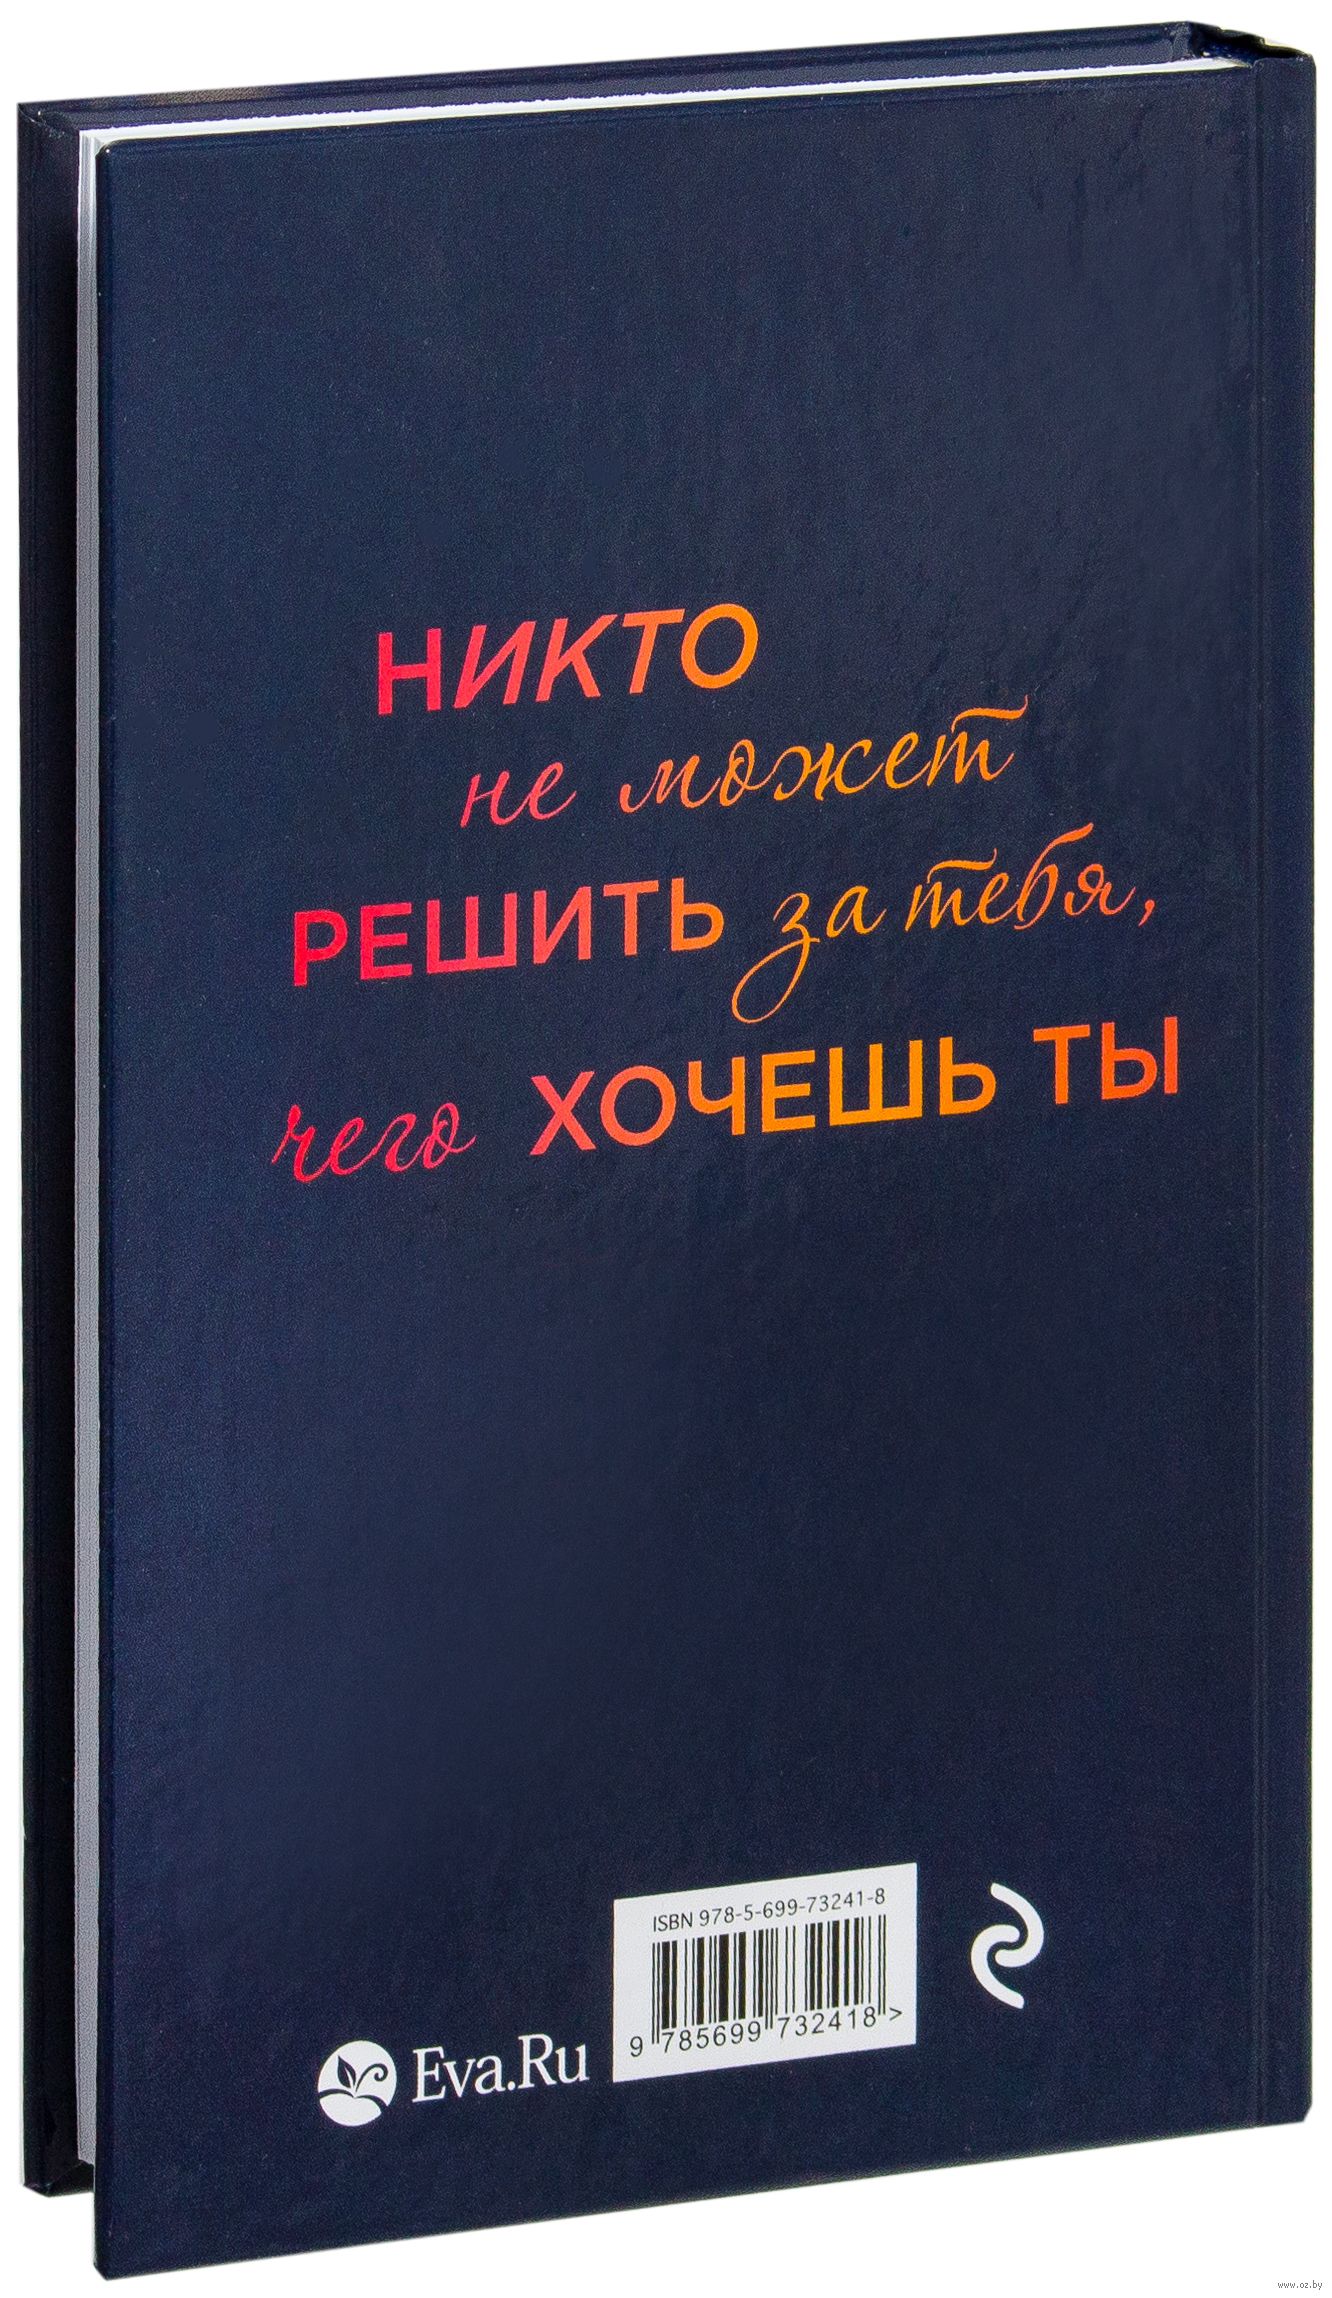 Я люблю тебя Ирэне Као - купить книгу Я люблю тебя в Минске — Издательство  Эксмо на OZ.by